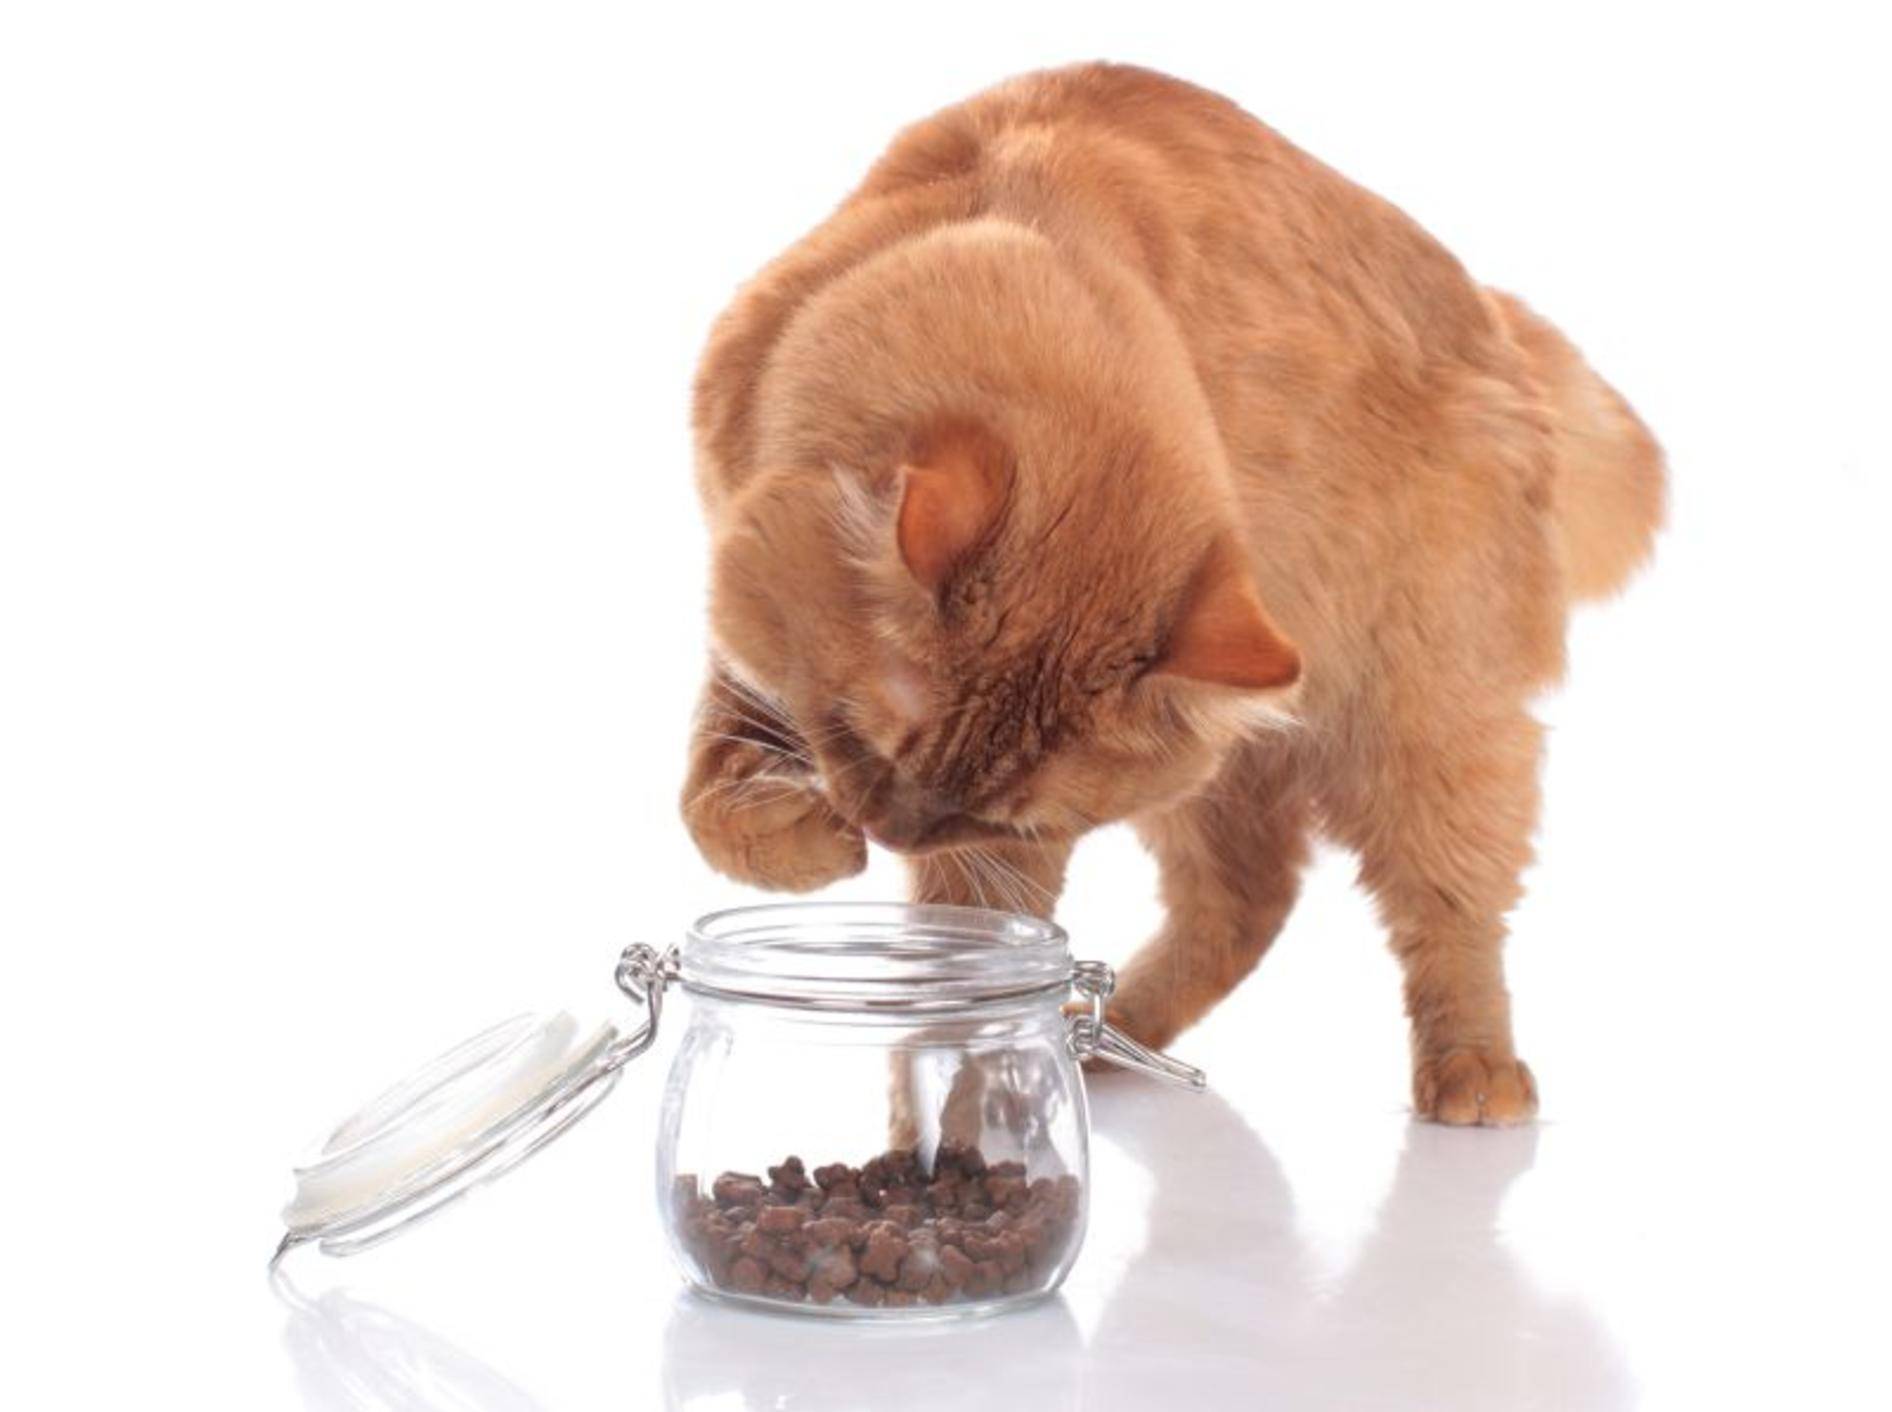 Katzenfutter hygienisch aufbewahren in der Futterbox - Bild: Shutterstock / absolutimages